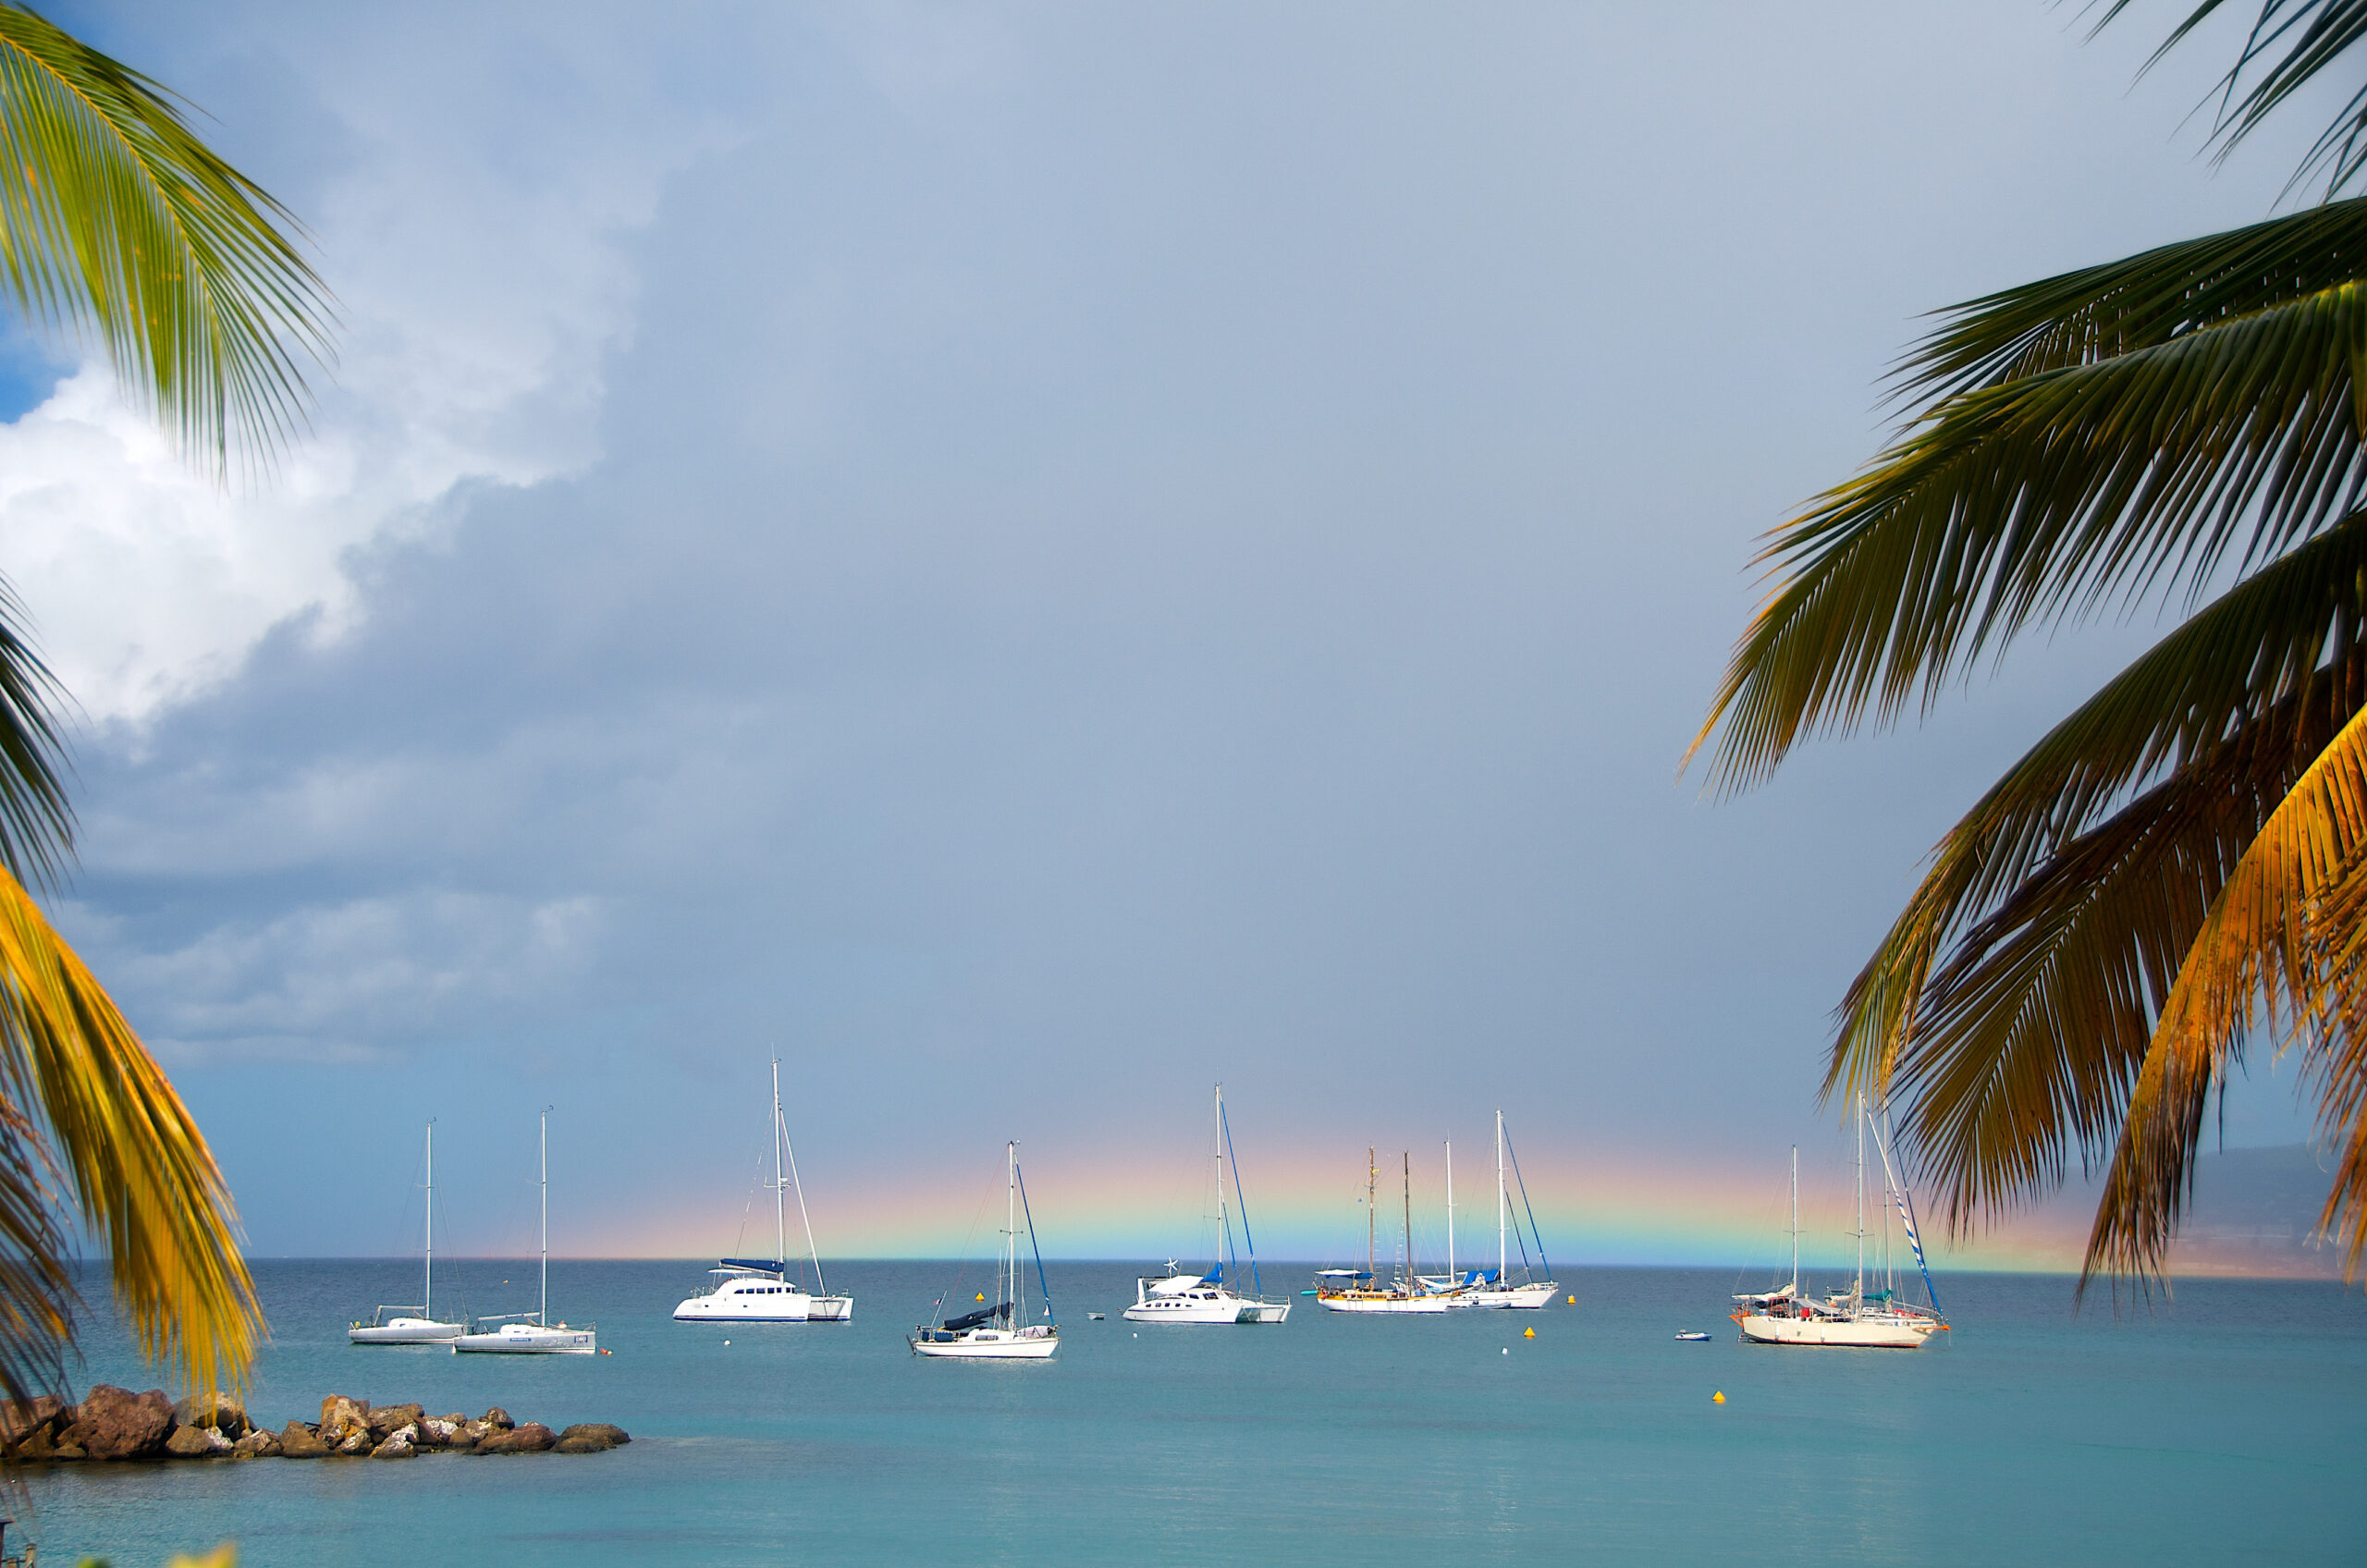 Low Rainbow Offshore Pointe-du-Bout, Martinique